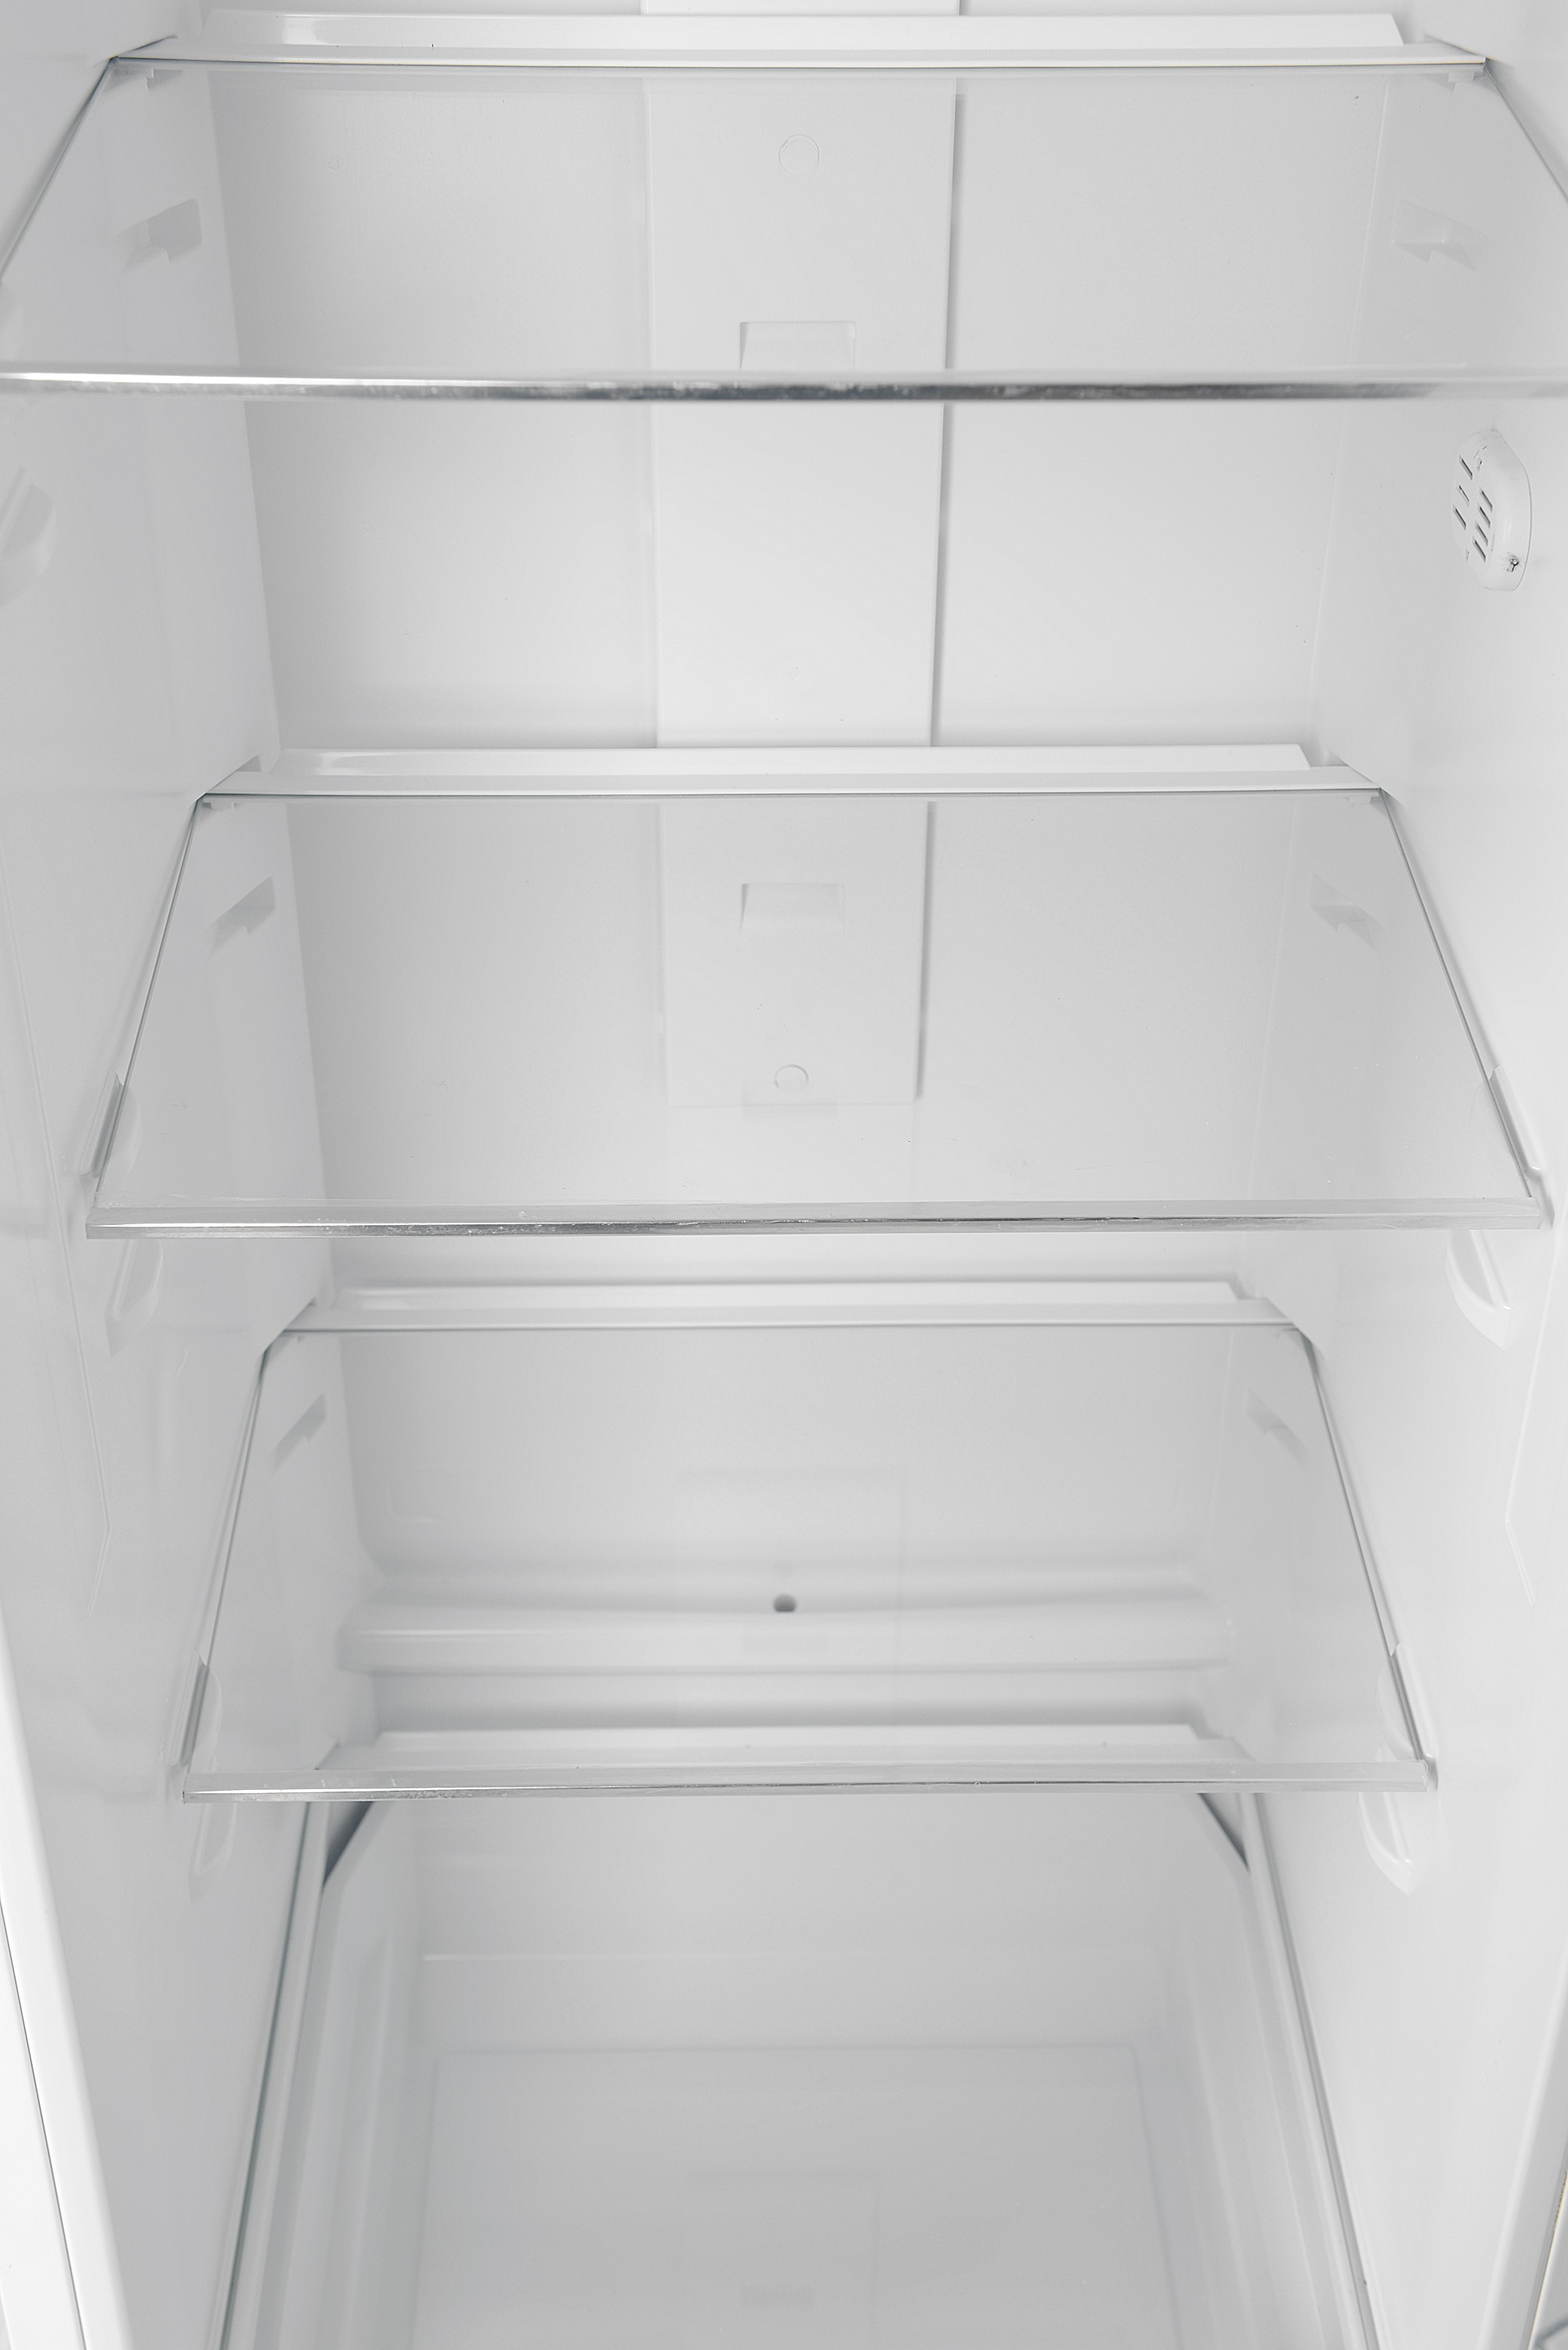 Холодильник Vestfrost IR 2795 E отзывы - изображения 5